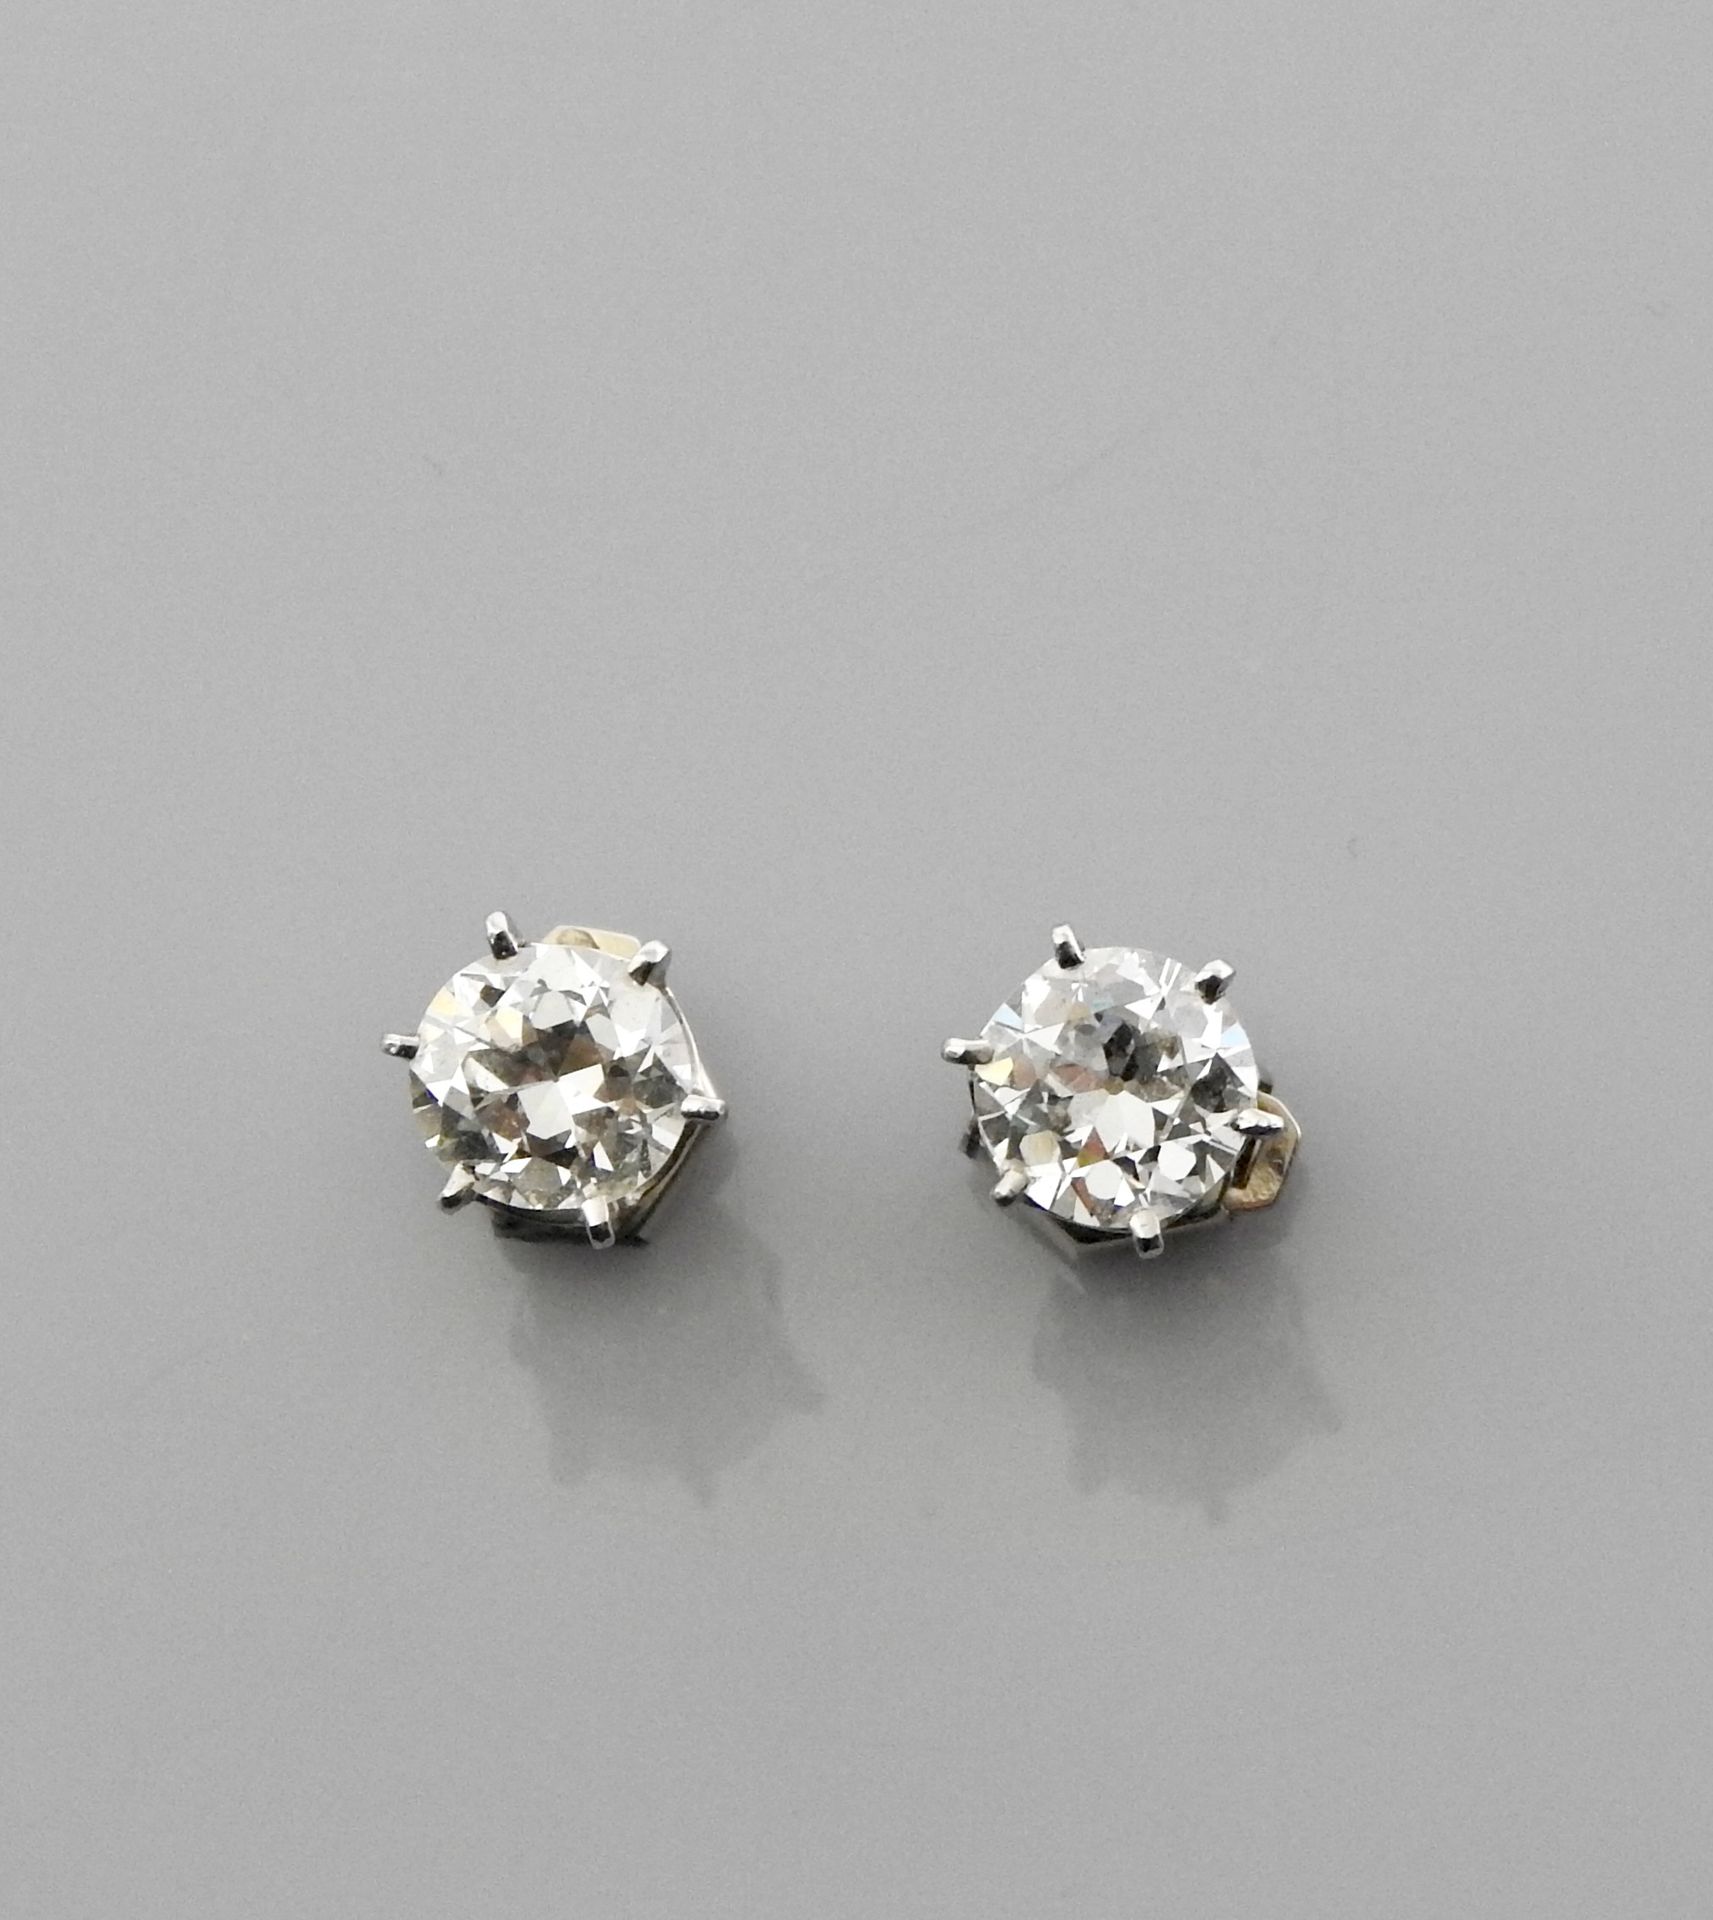 Null 白金耳环，750毫米，每只耳环都镶嵌了一颗明亮式切割钻石，重约1克拉，重量：3.1克。